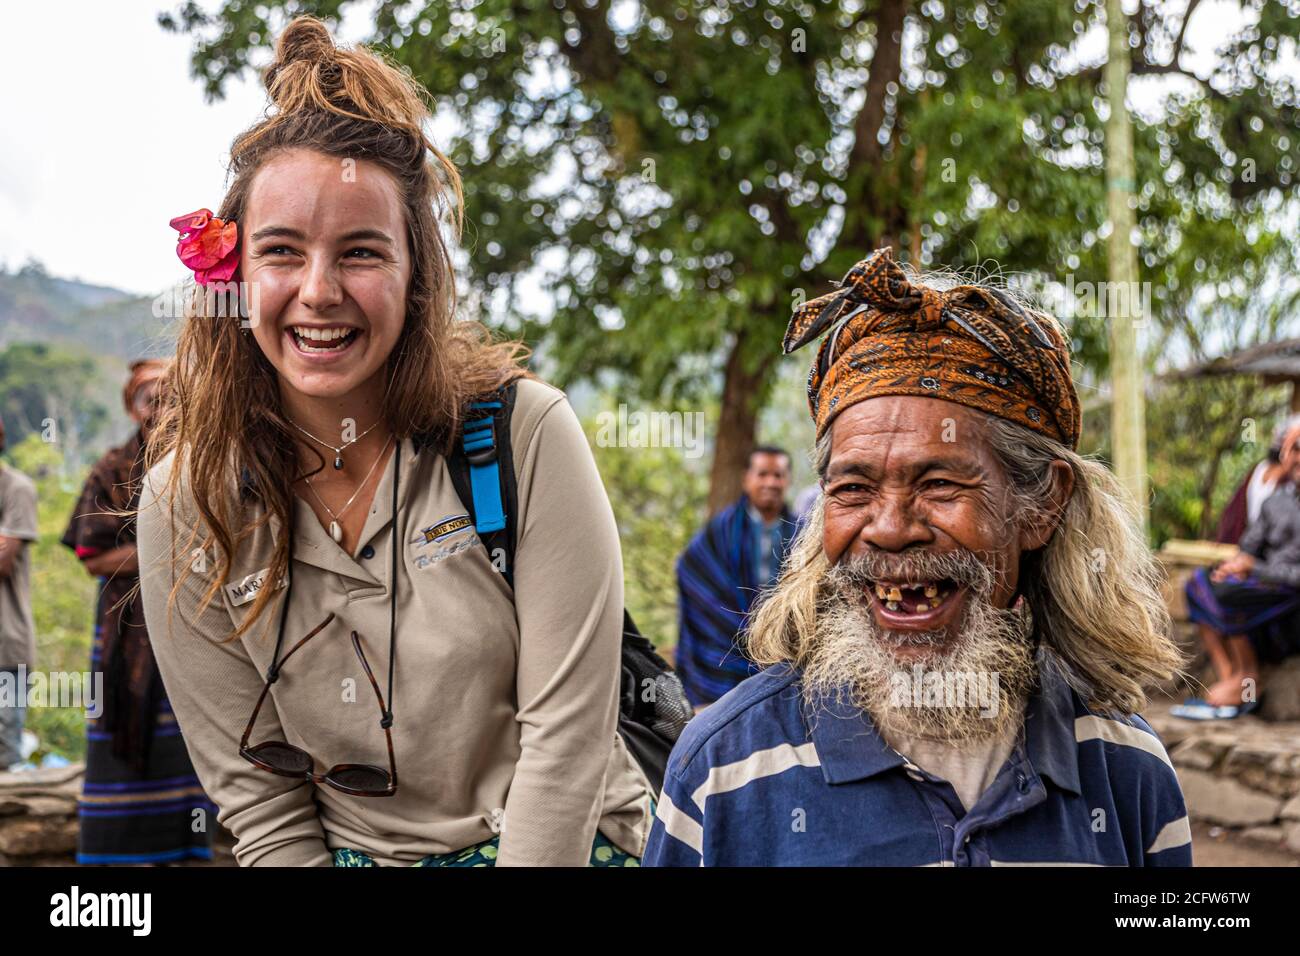 Humorous exchange between cultures, Sunda Islands, Indonesia Stock Photo